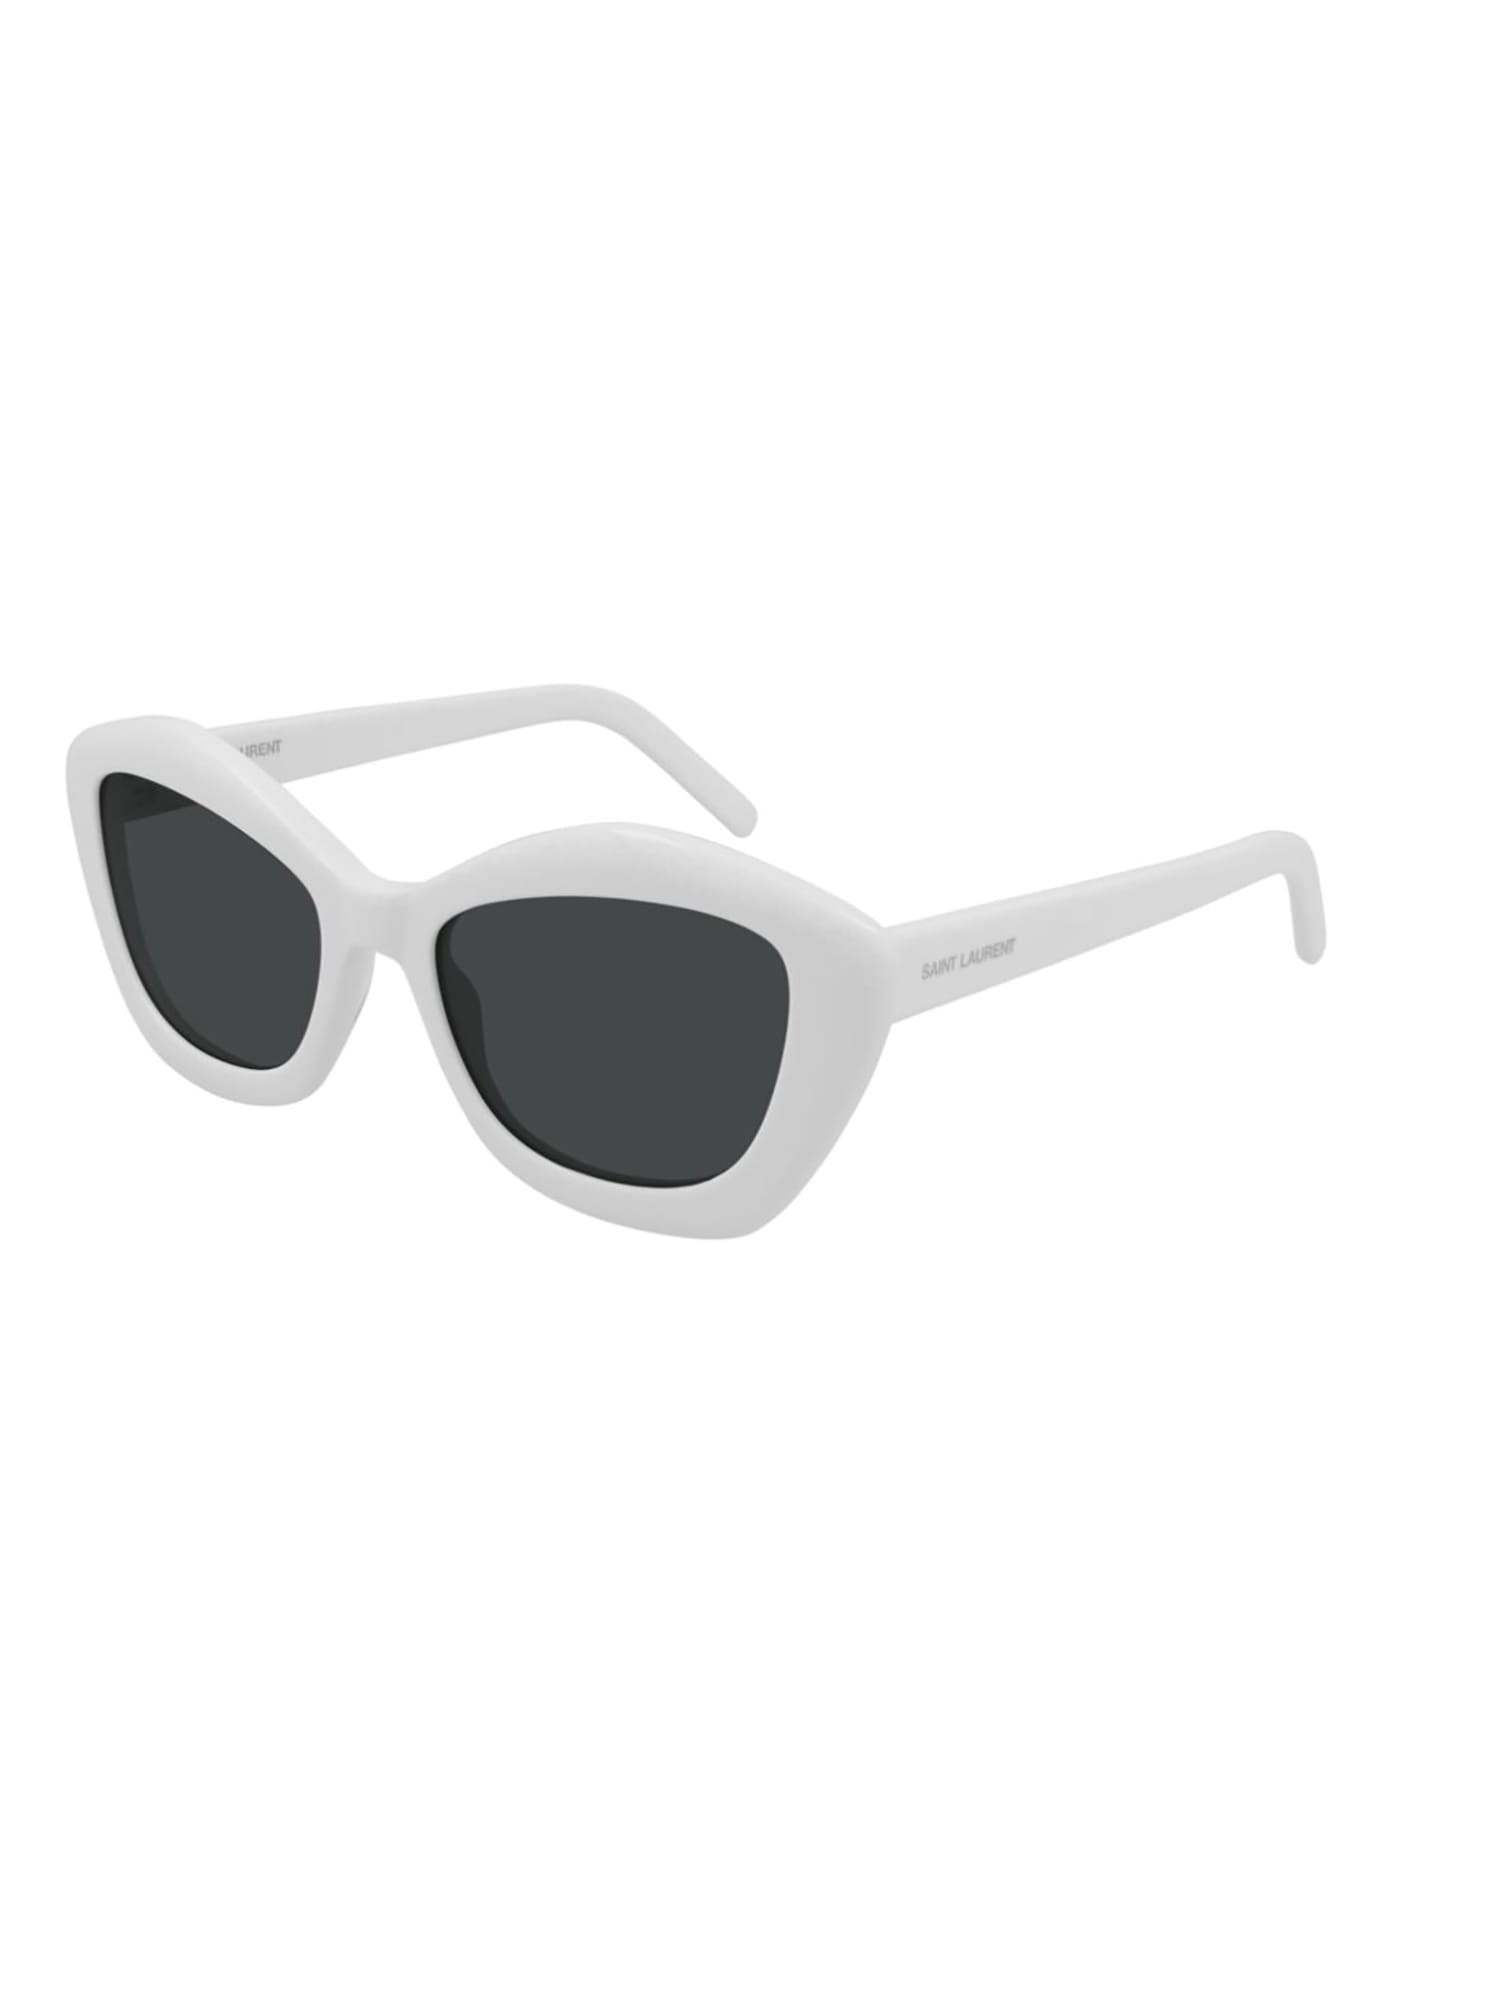 Saint Laurent Eyewear SL 68 Sunglasses